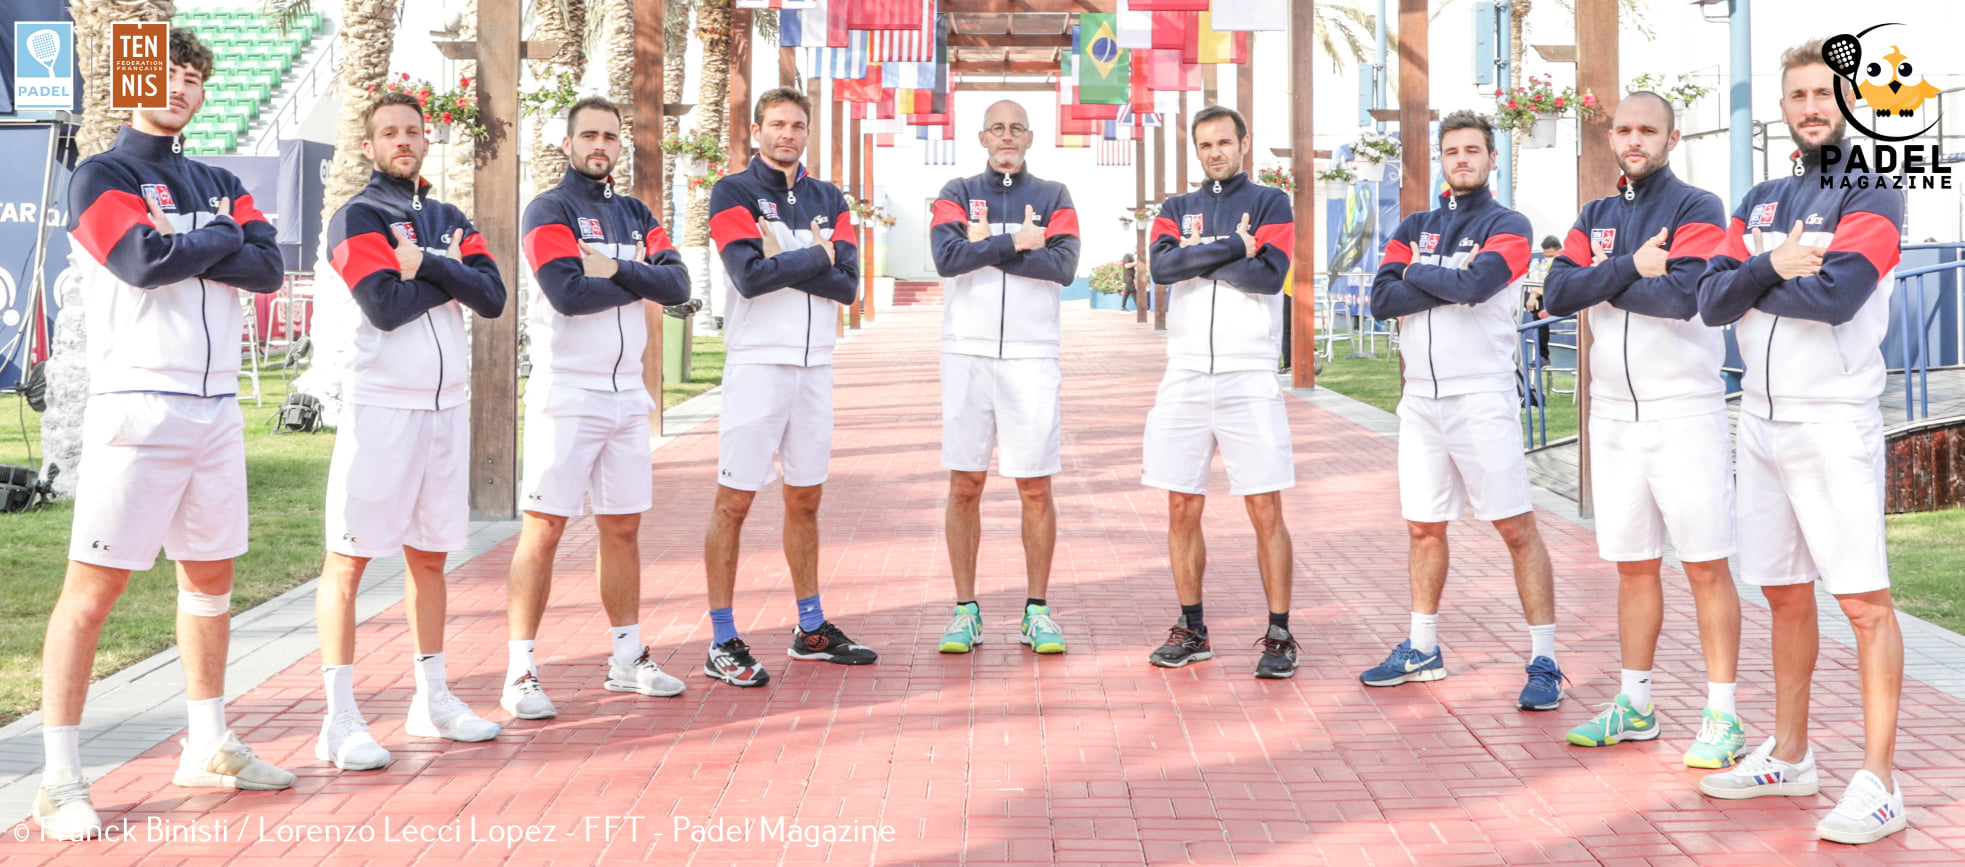 Französisches Team von padel Männerarme verschränkten WM 2020 in Katar